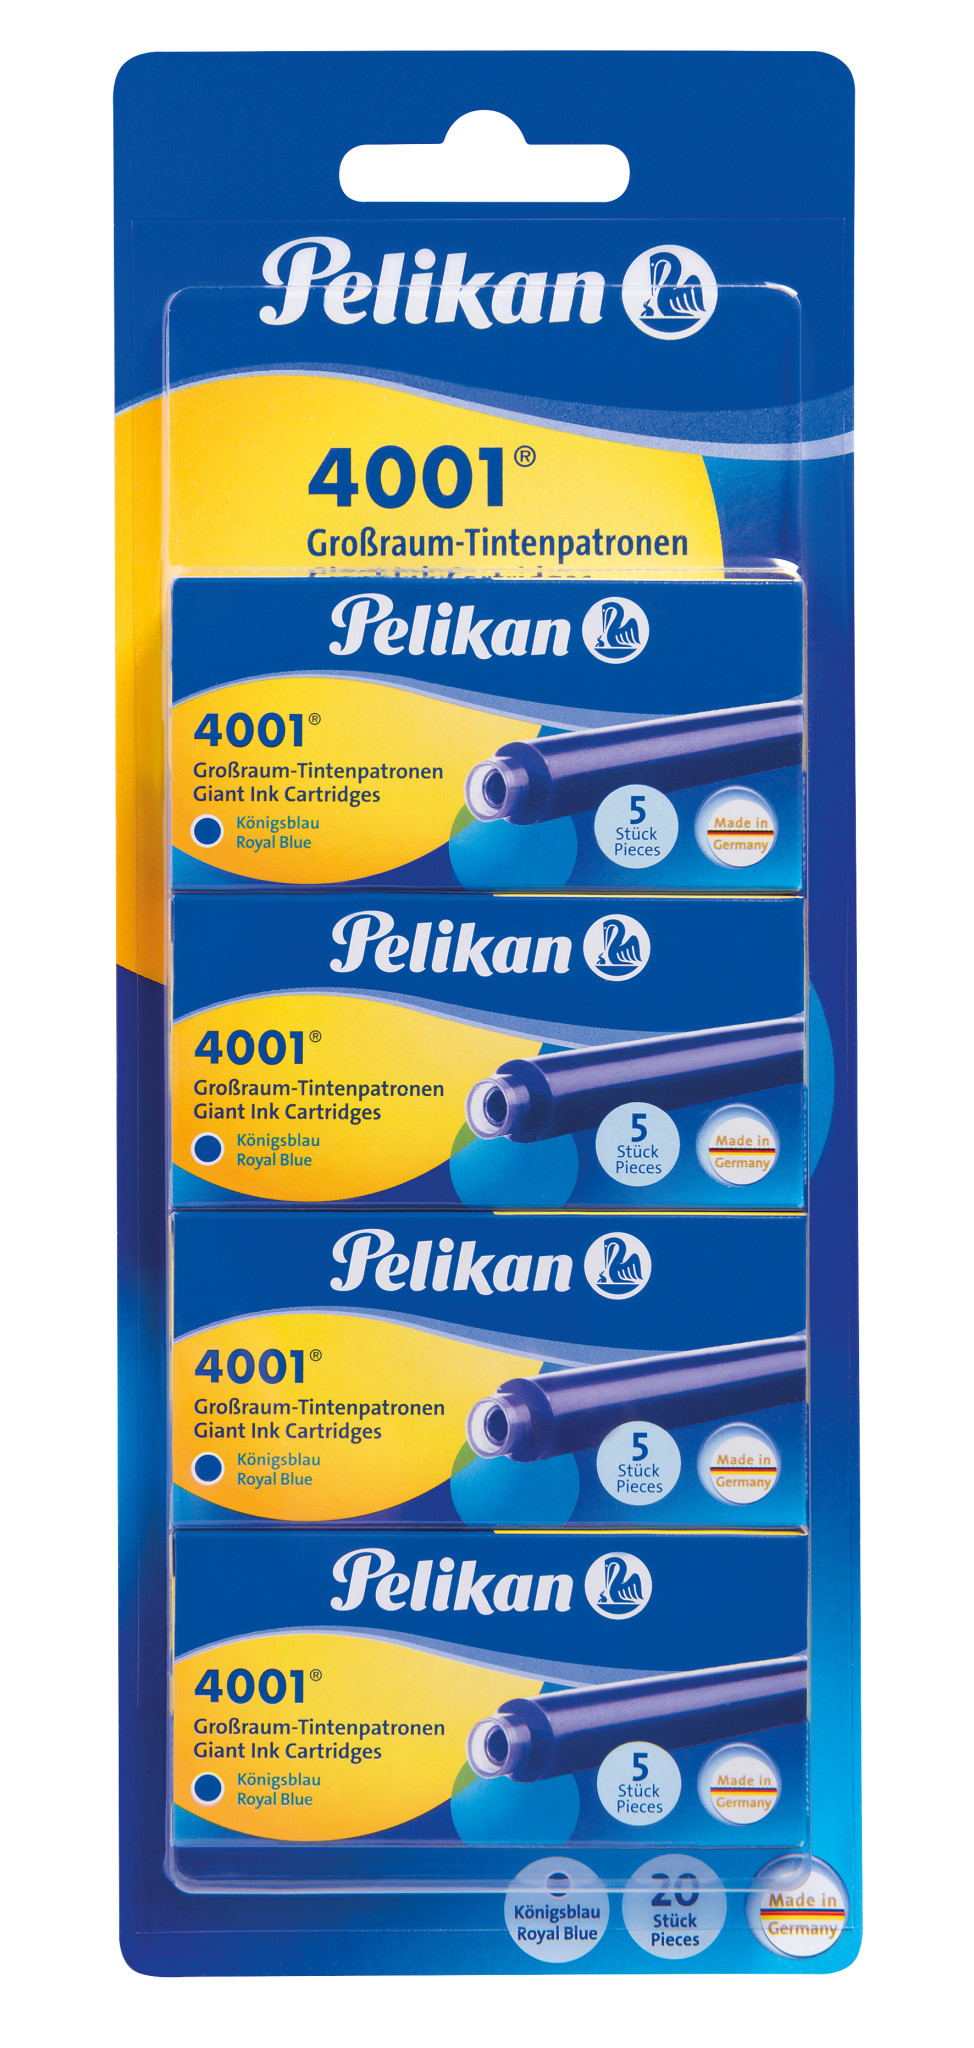 Pelikan 330894 - Blau - Blau - Gelb - Füllfederhalter - Deutschland - Sichtverpackung - 20 Stück(e)